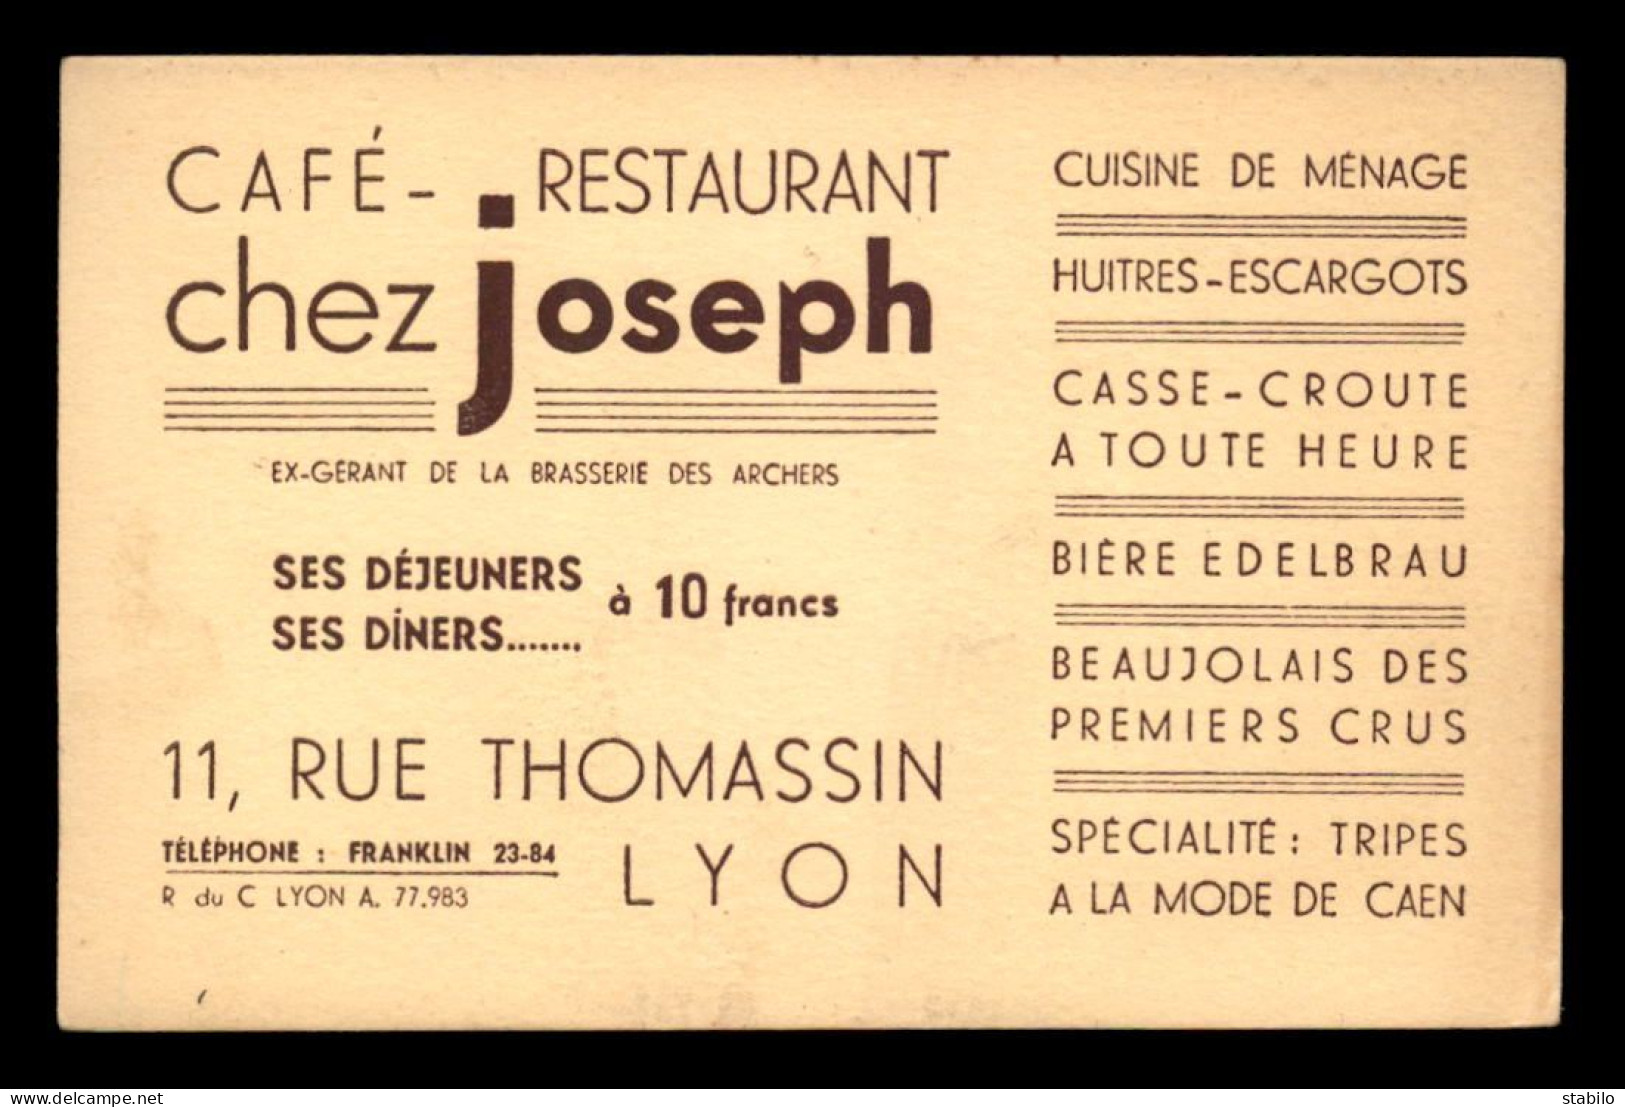 CARTE DE VISITE - CAFE-RESTAURANT "CHEZ JOSEPH" 11 RUE THOMASSIN, LYON - FORMAT 8.5 X 13 CM - Visiting Cards